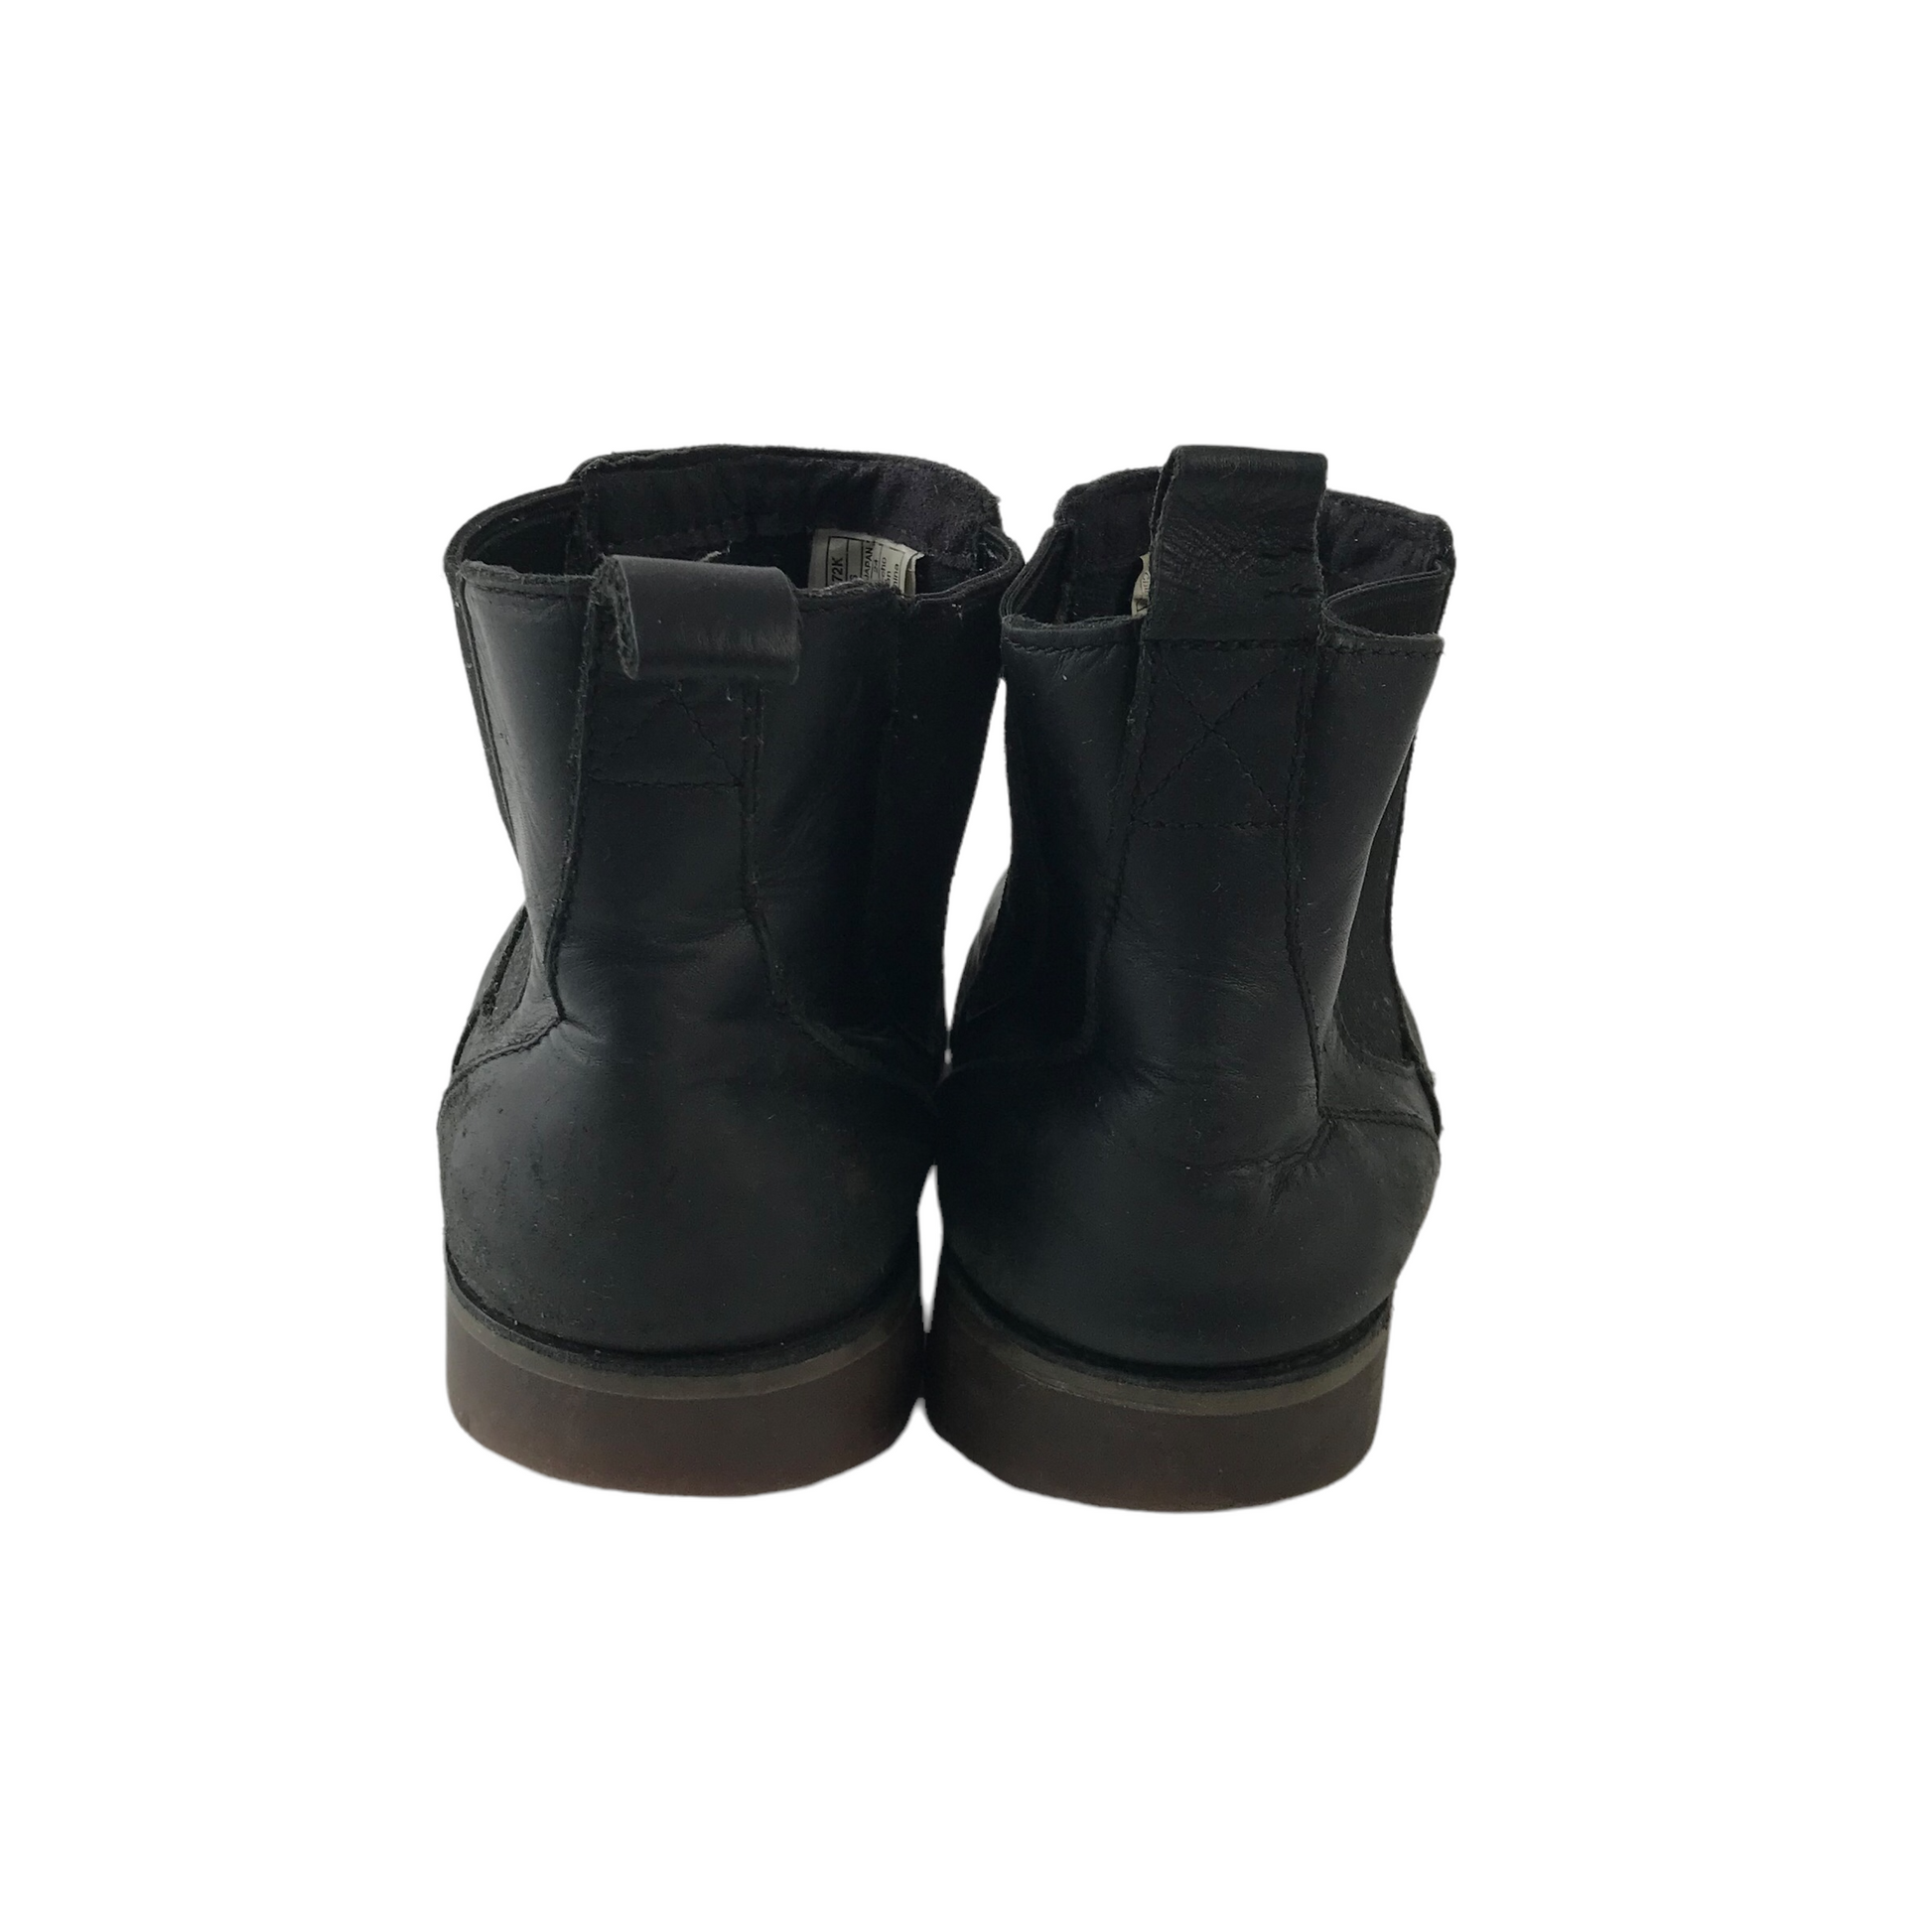 UGG Black Leather Boots Size UK 3